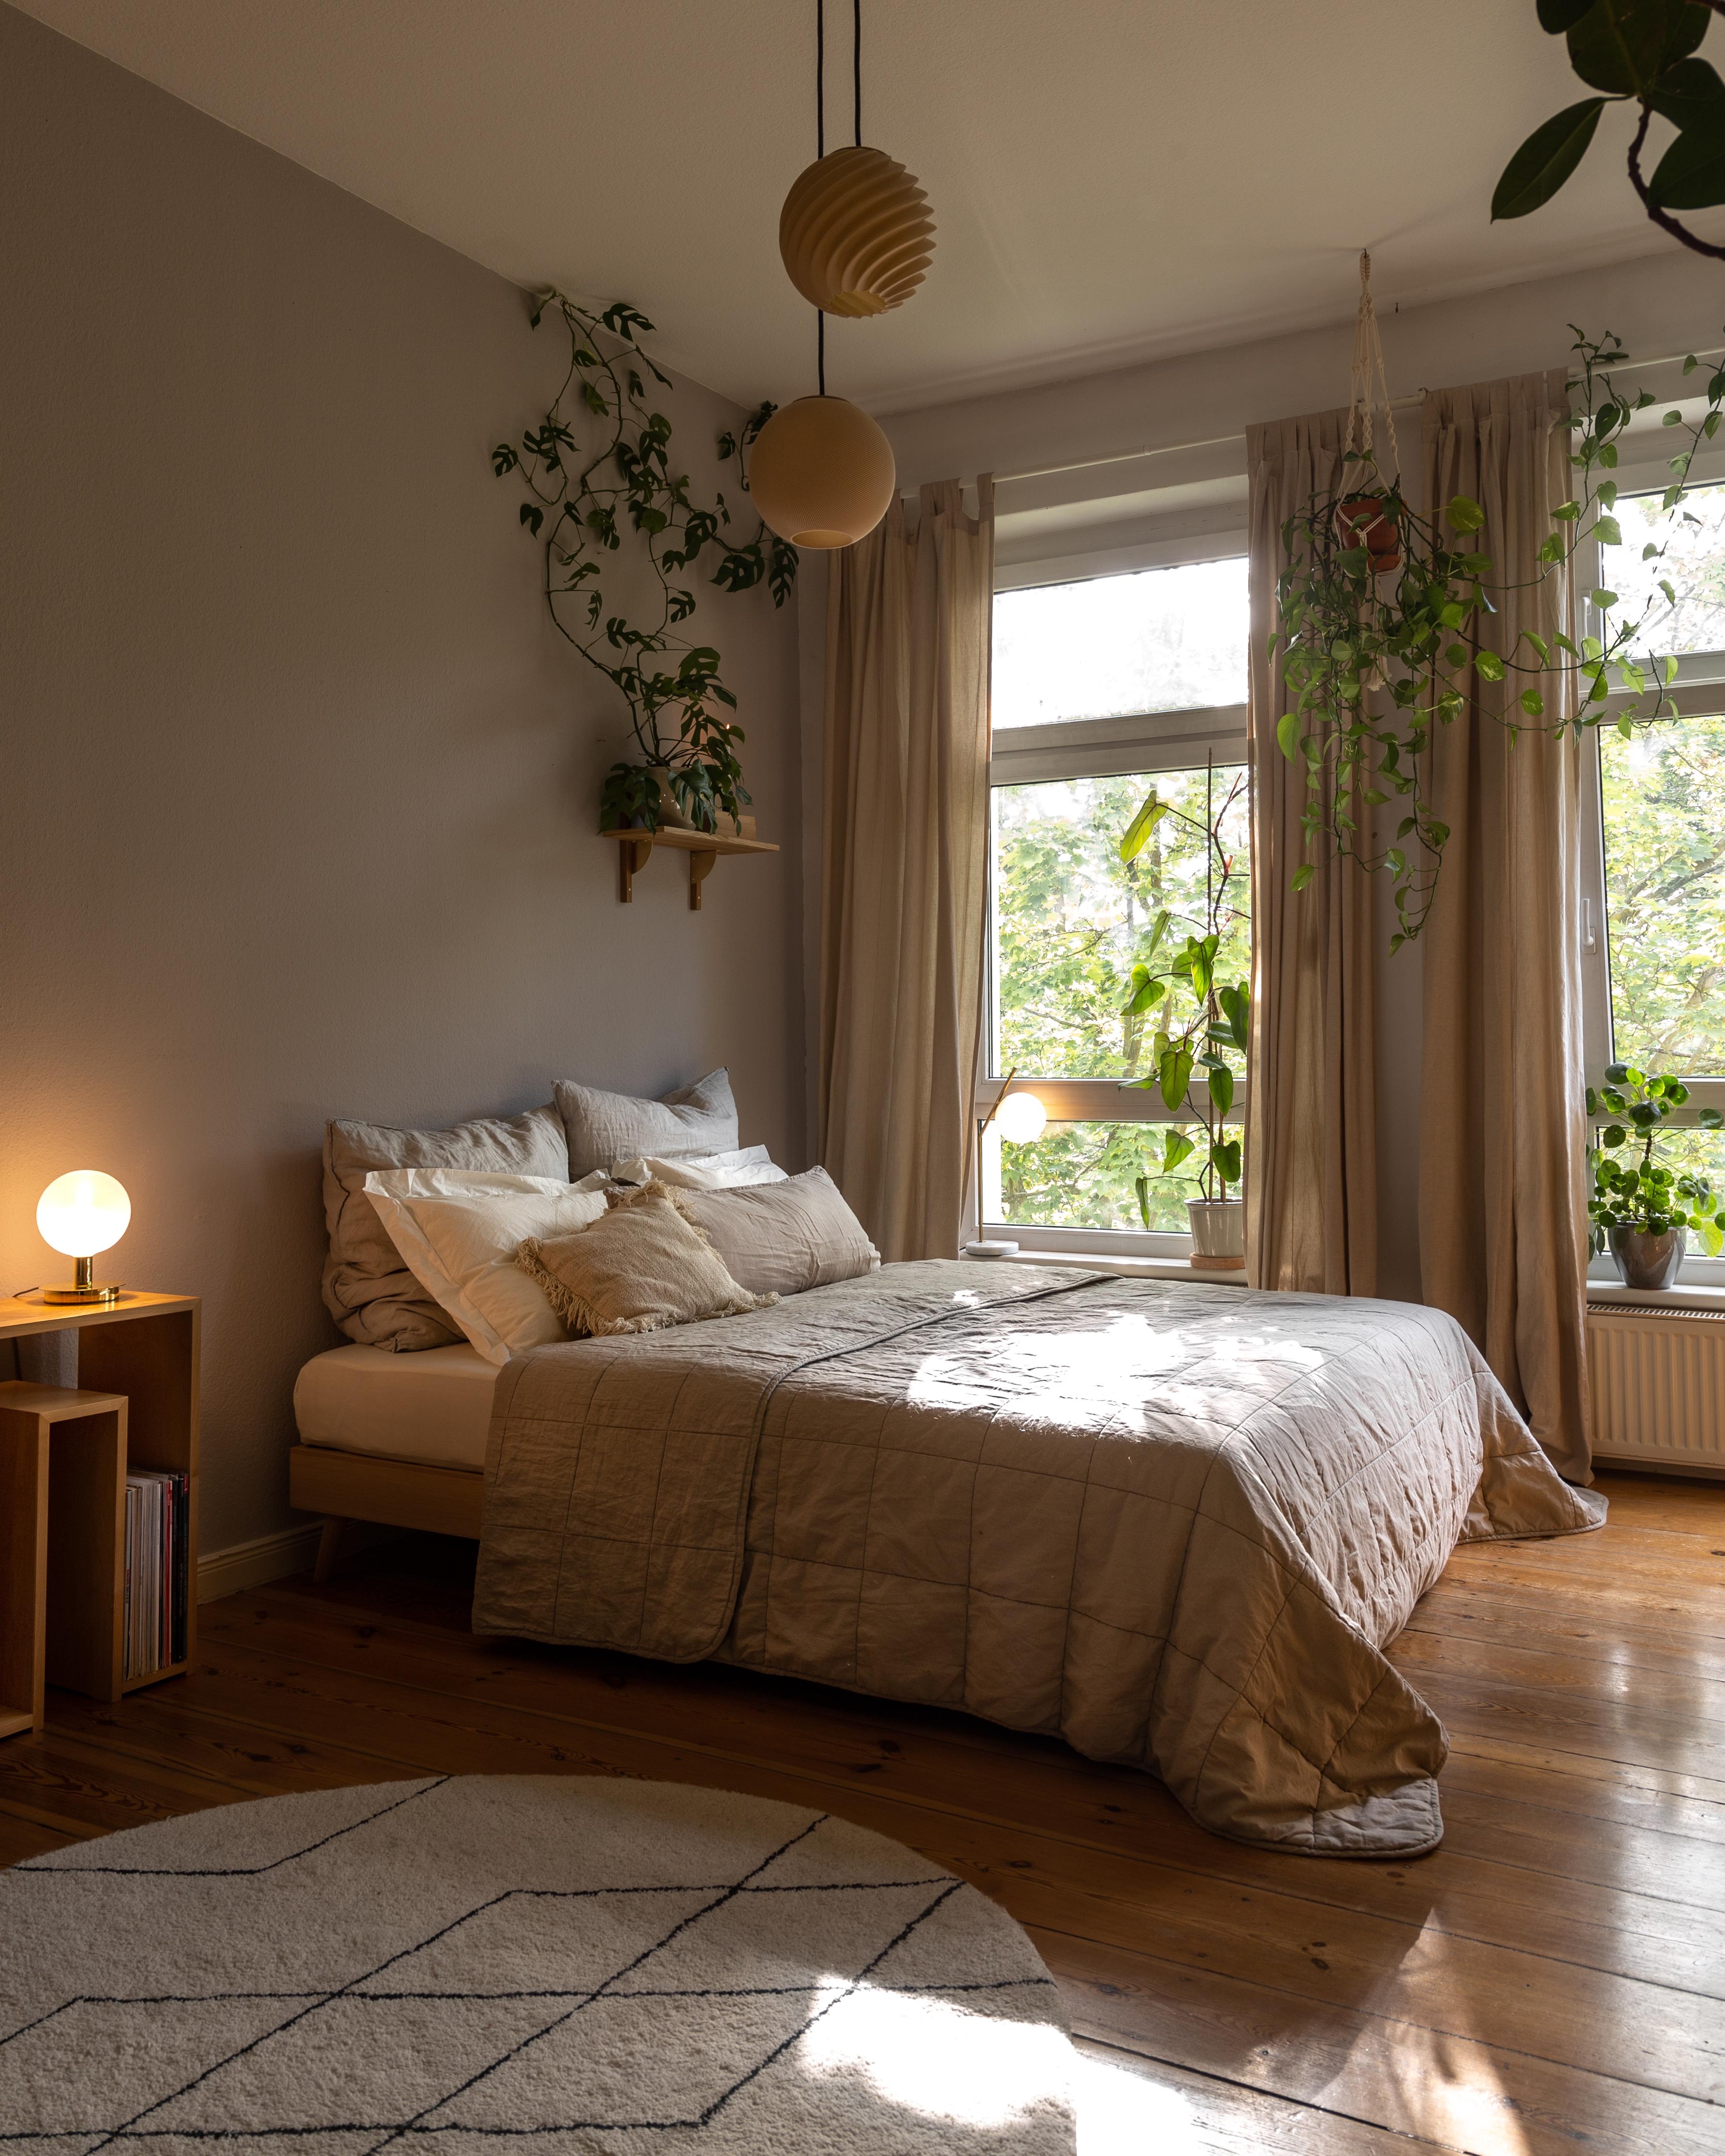 #schlafzimmer #einrichtung #bohointerior #bedroom #interiorinspo #interiordecor #altbauwohnung #homedecor